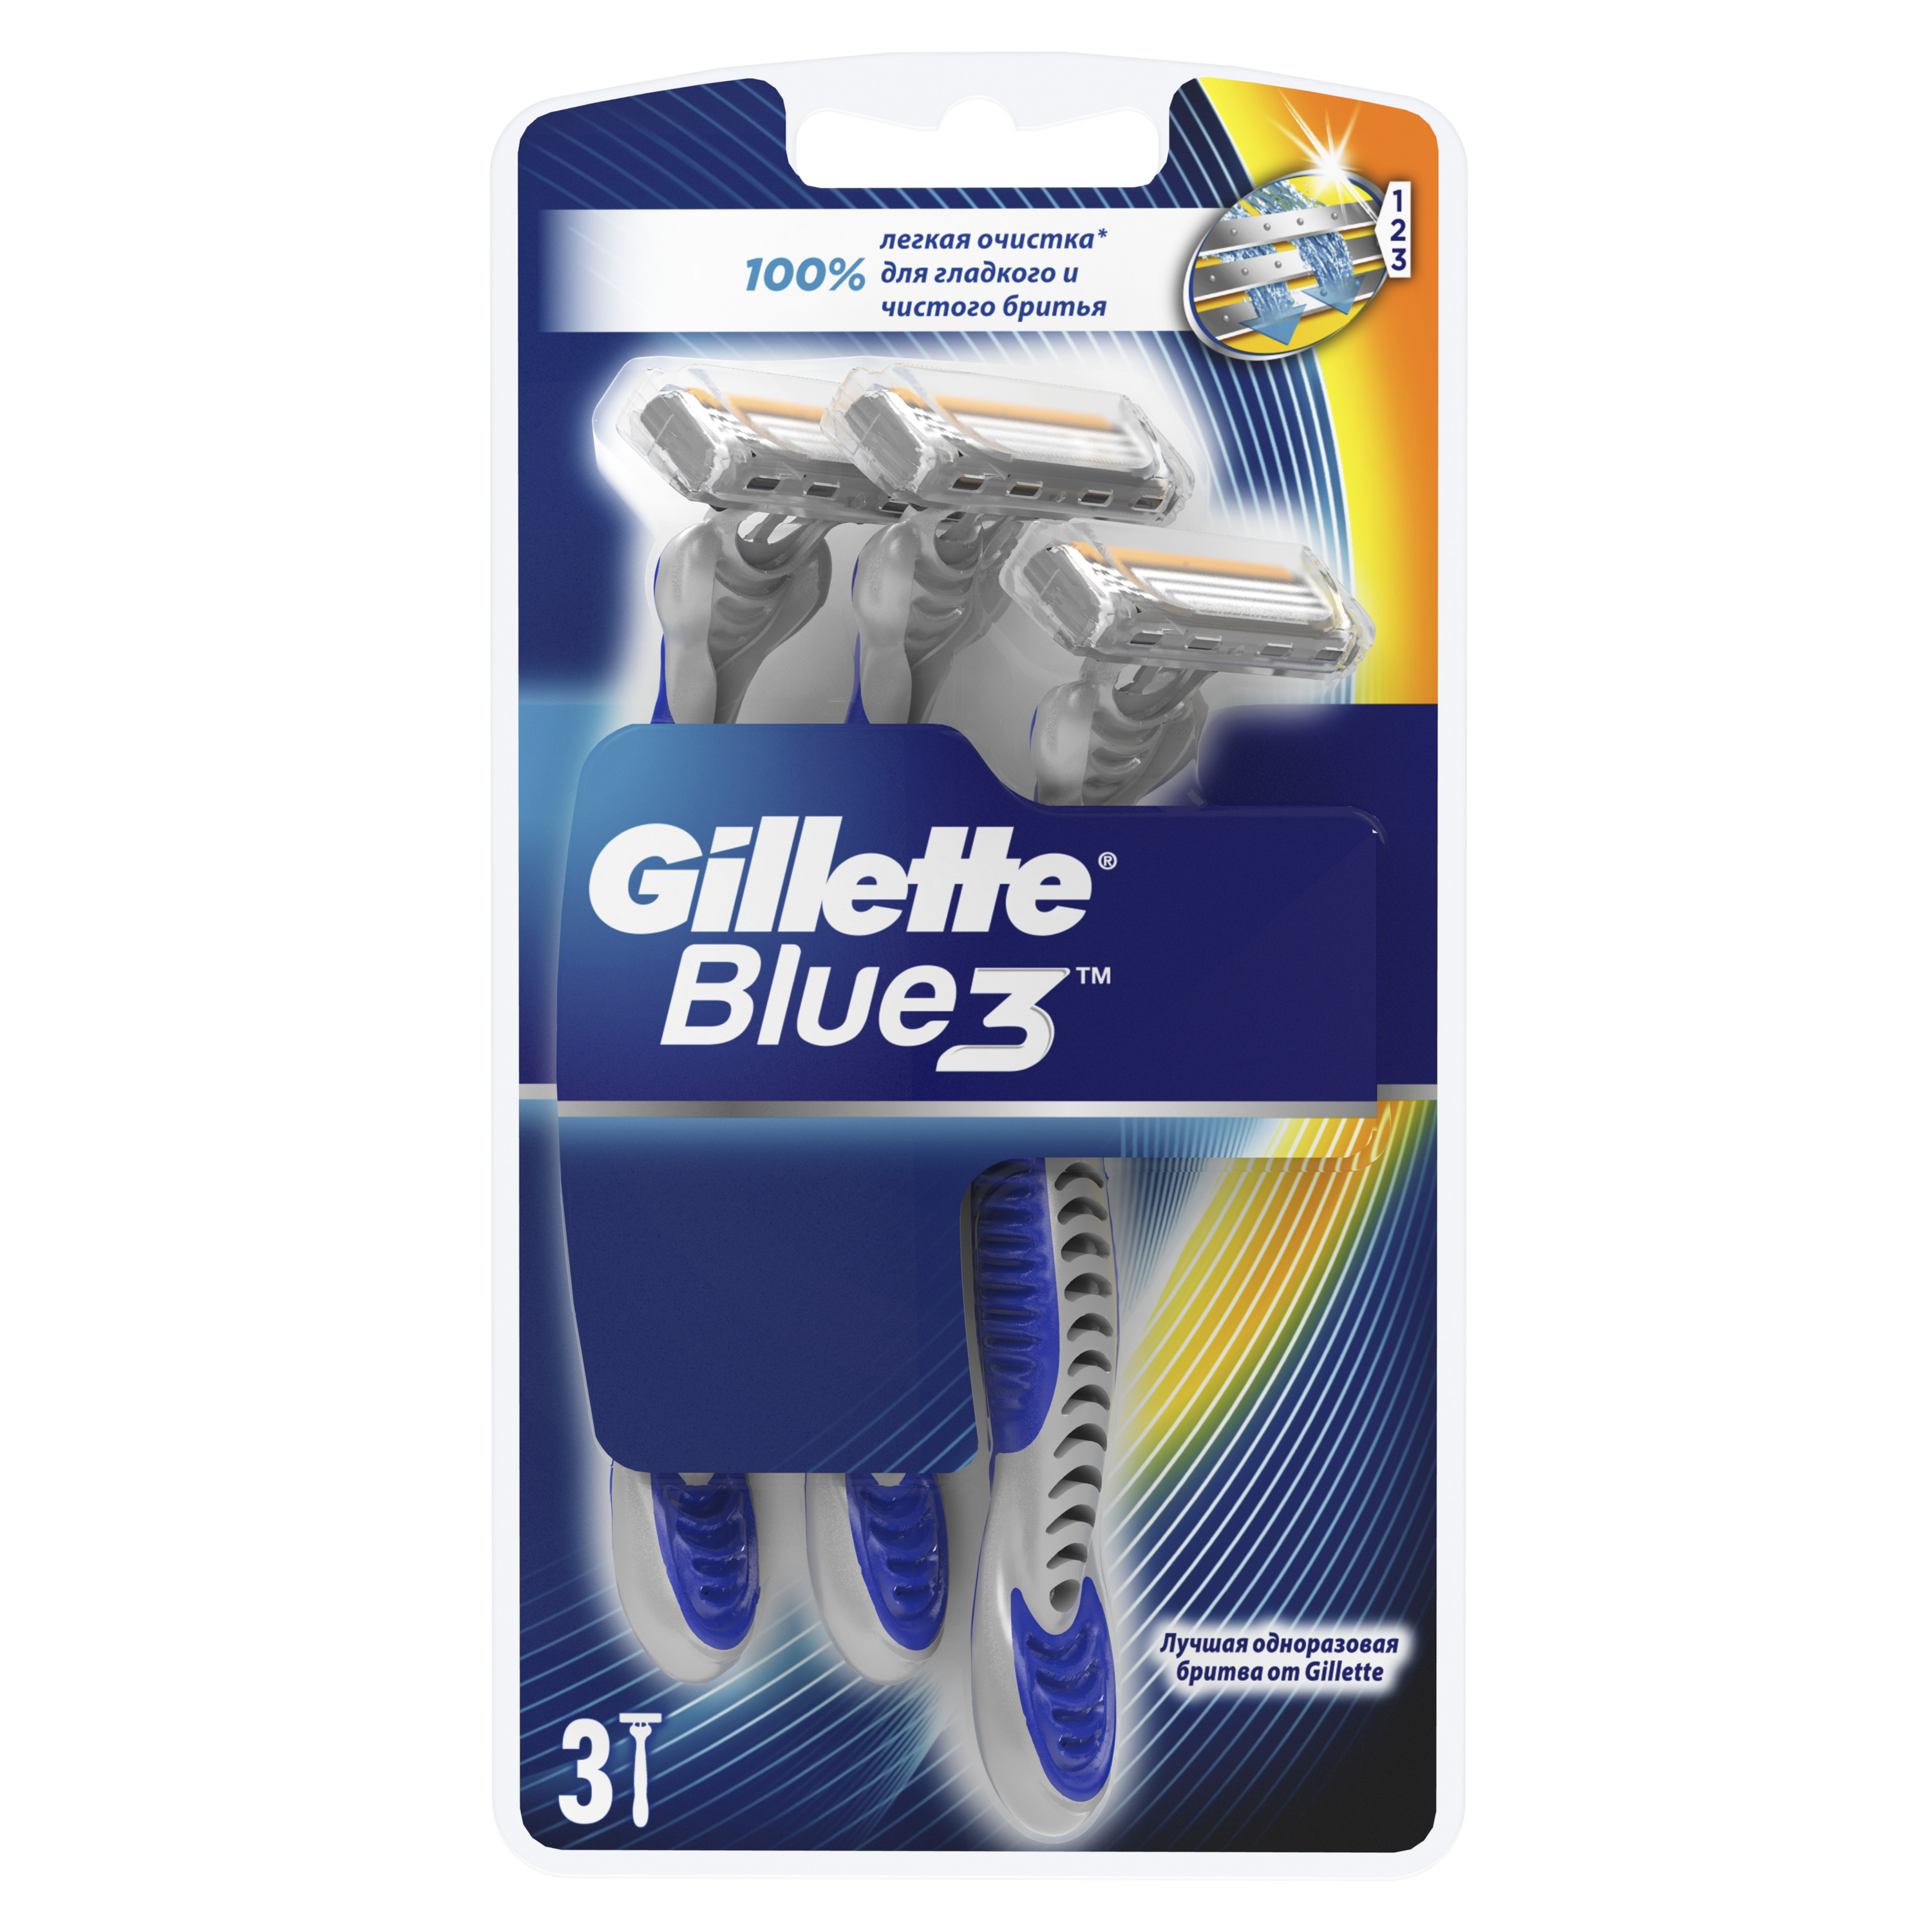 Одноразовая мужская бритва Gillette Blue3 3 шт одноразовая мужская бритва gillette blue3 3 шт